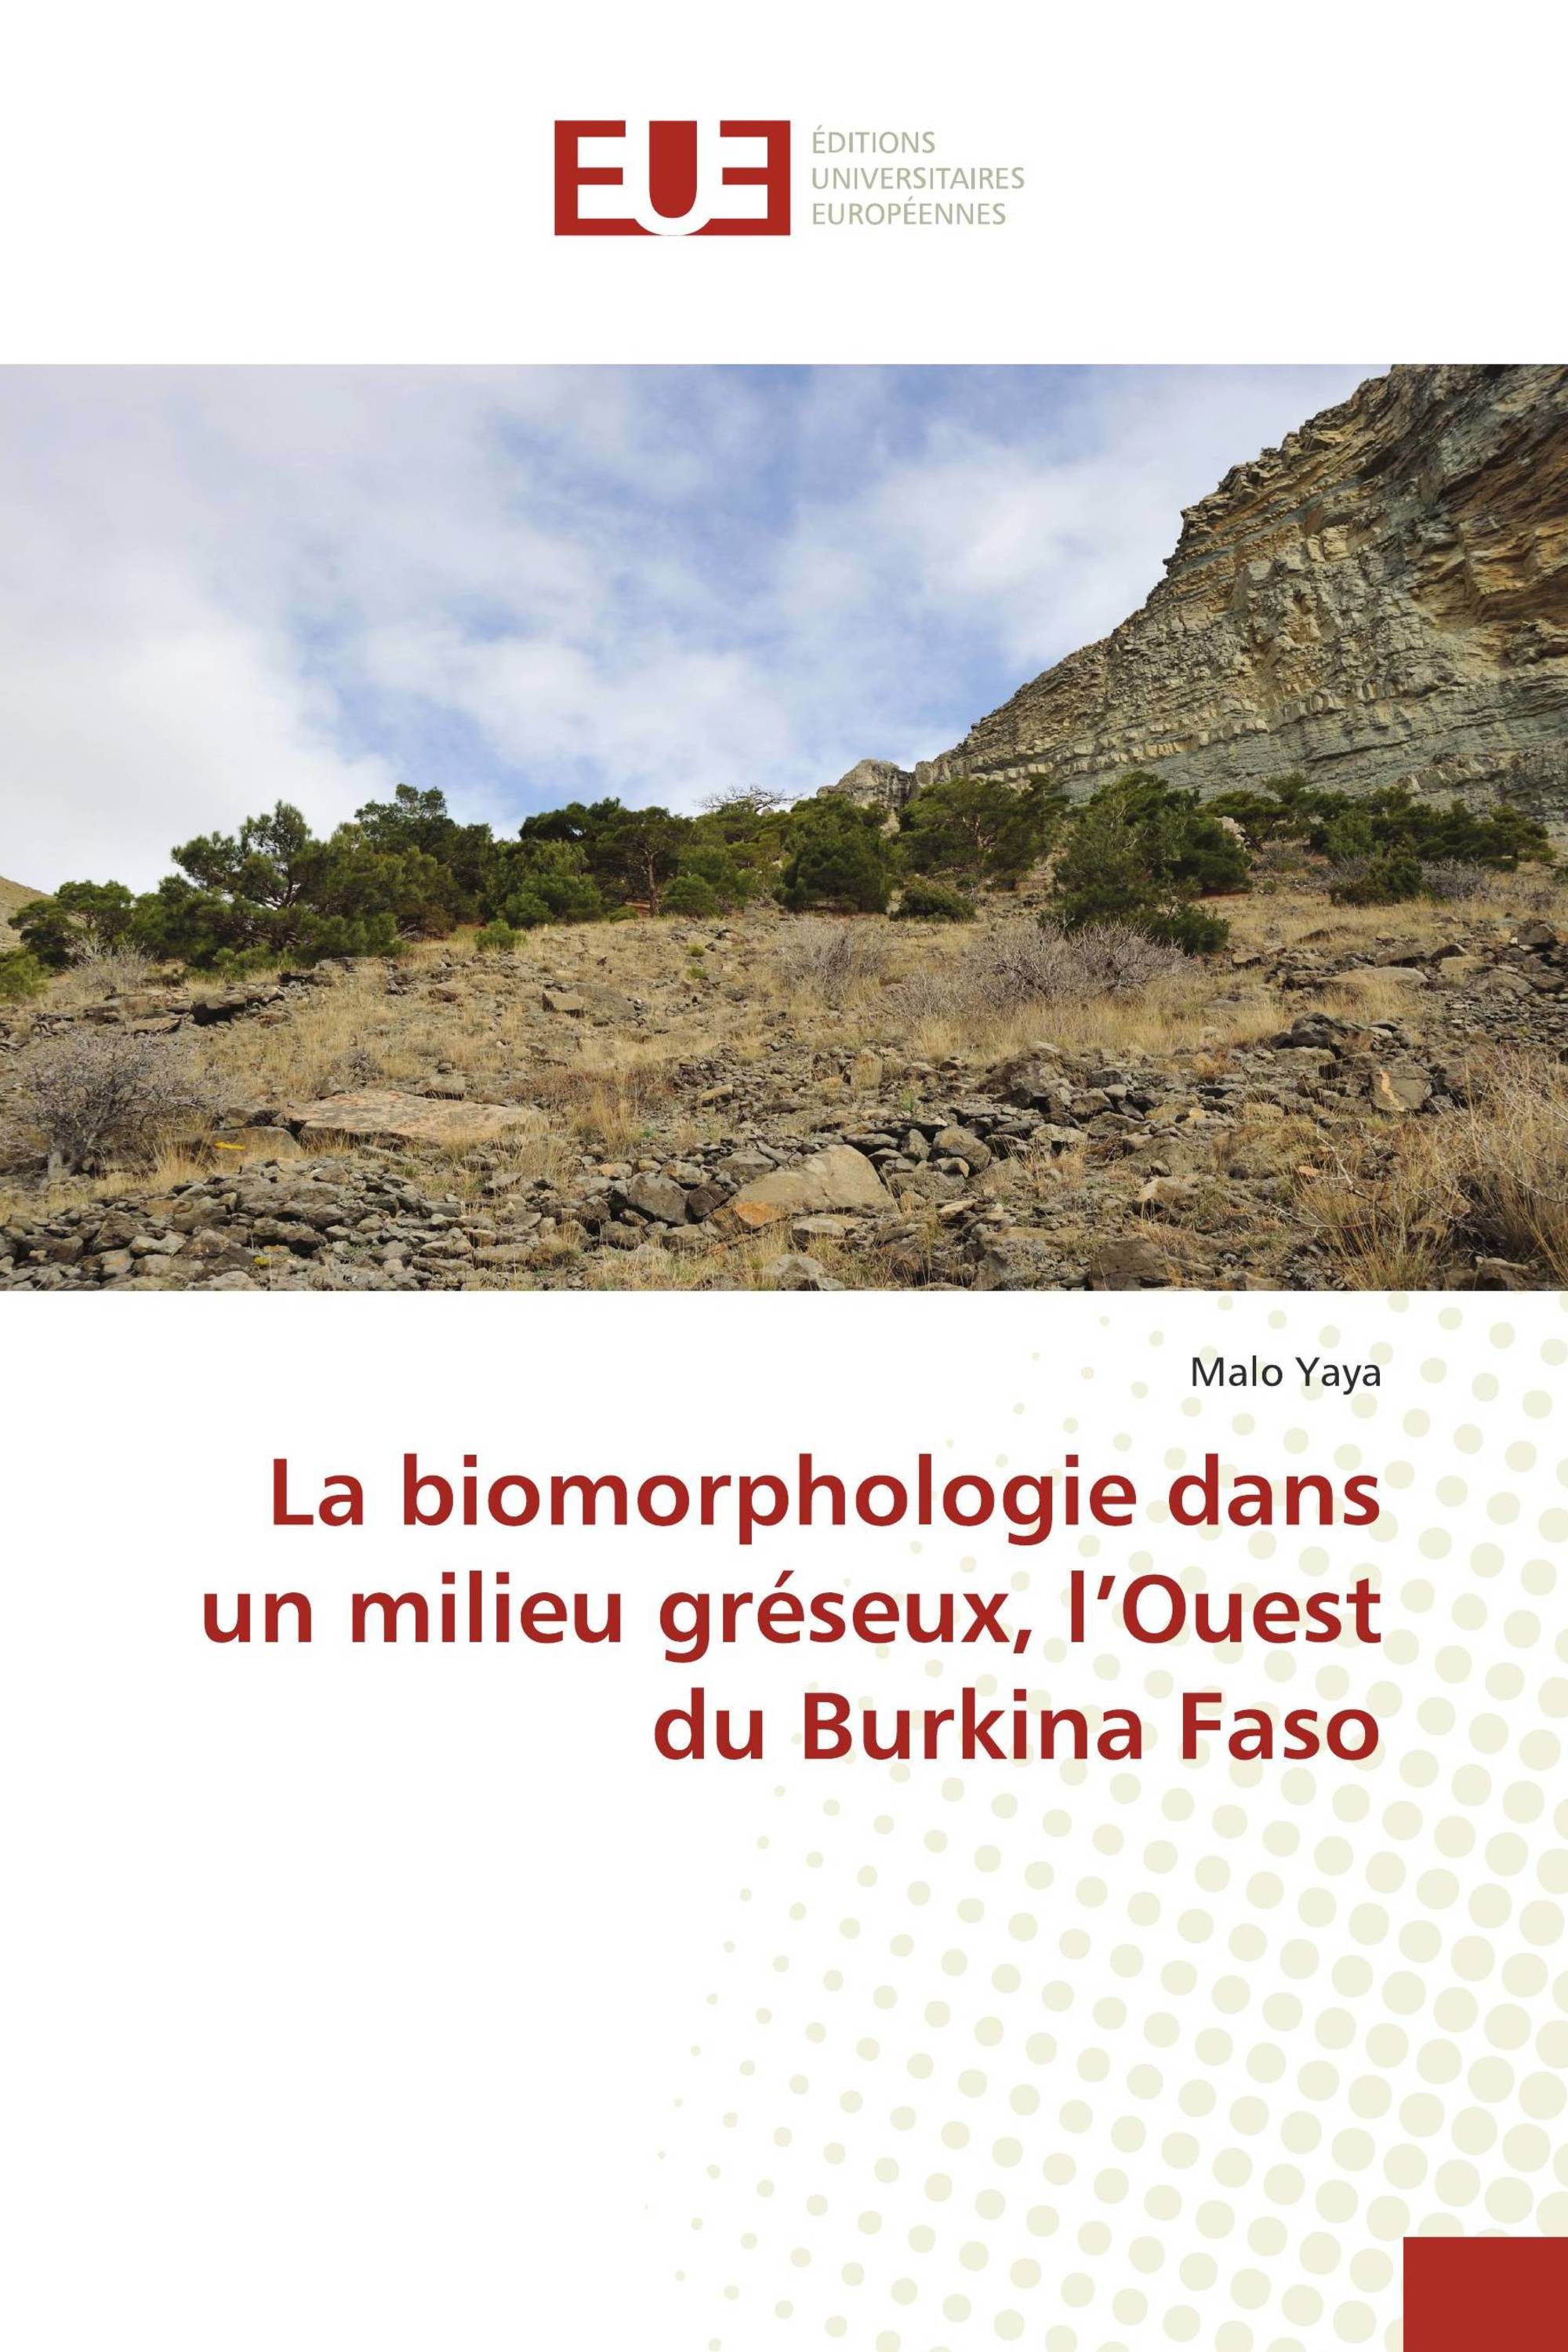 La biomorphologie dans un milieu gréseux, l’Ouest du Burkina Faso